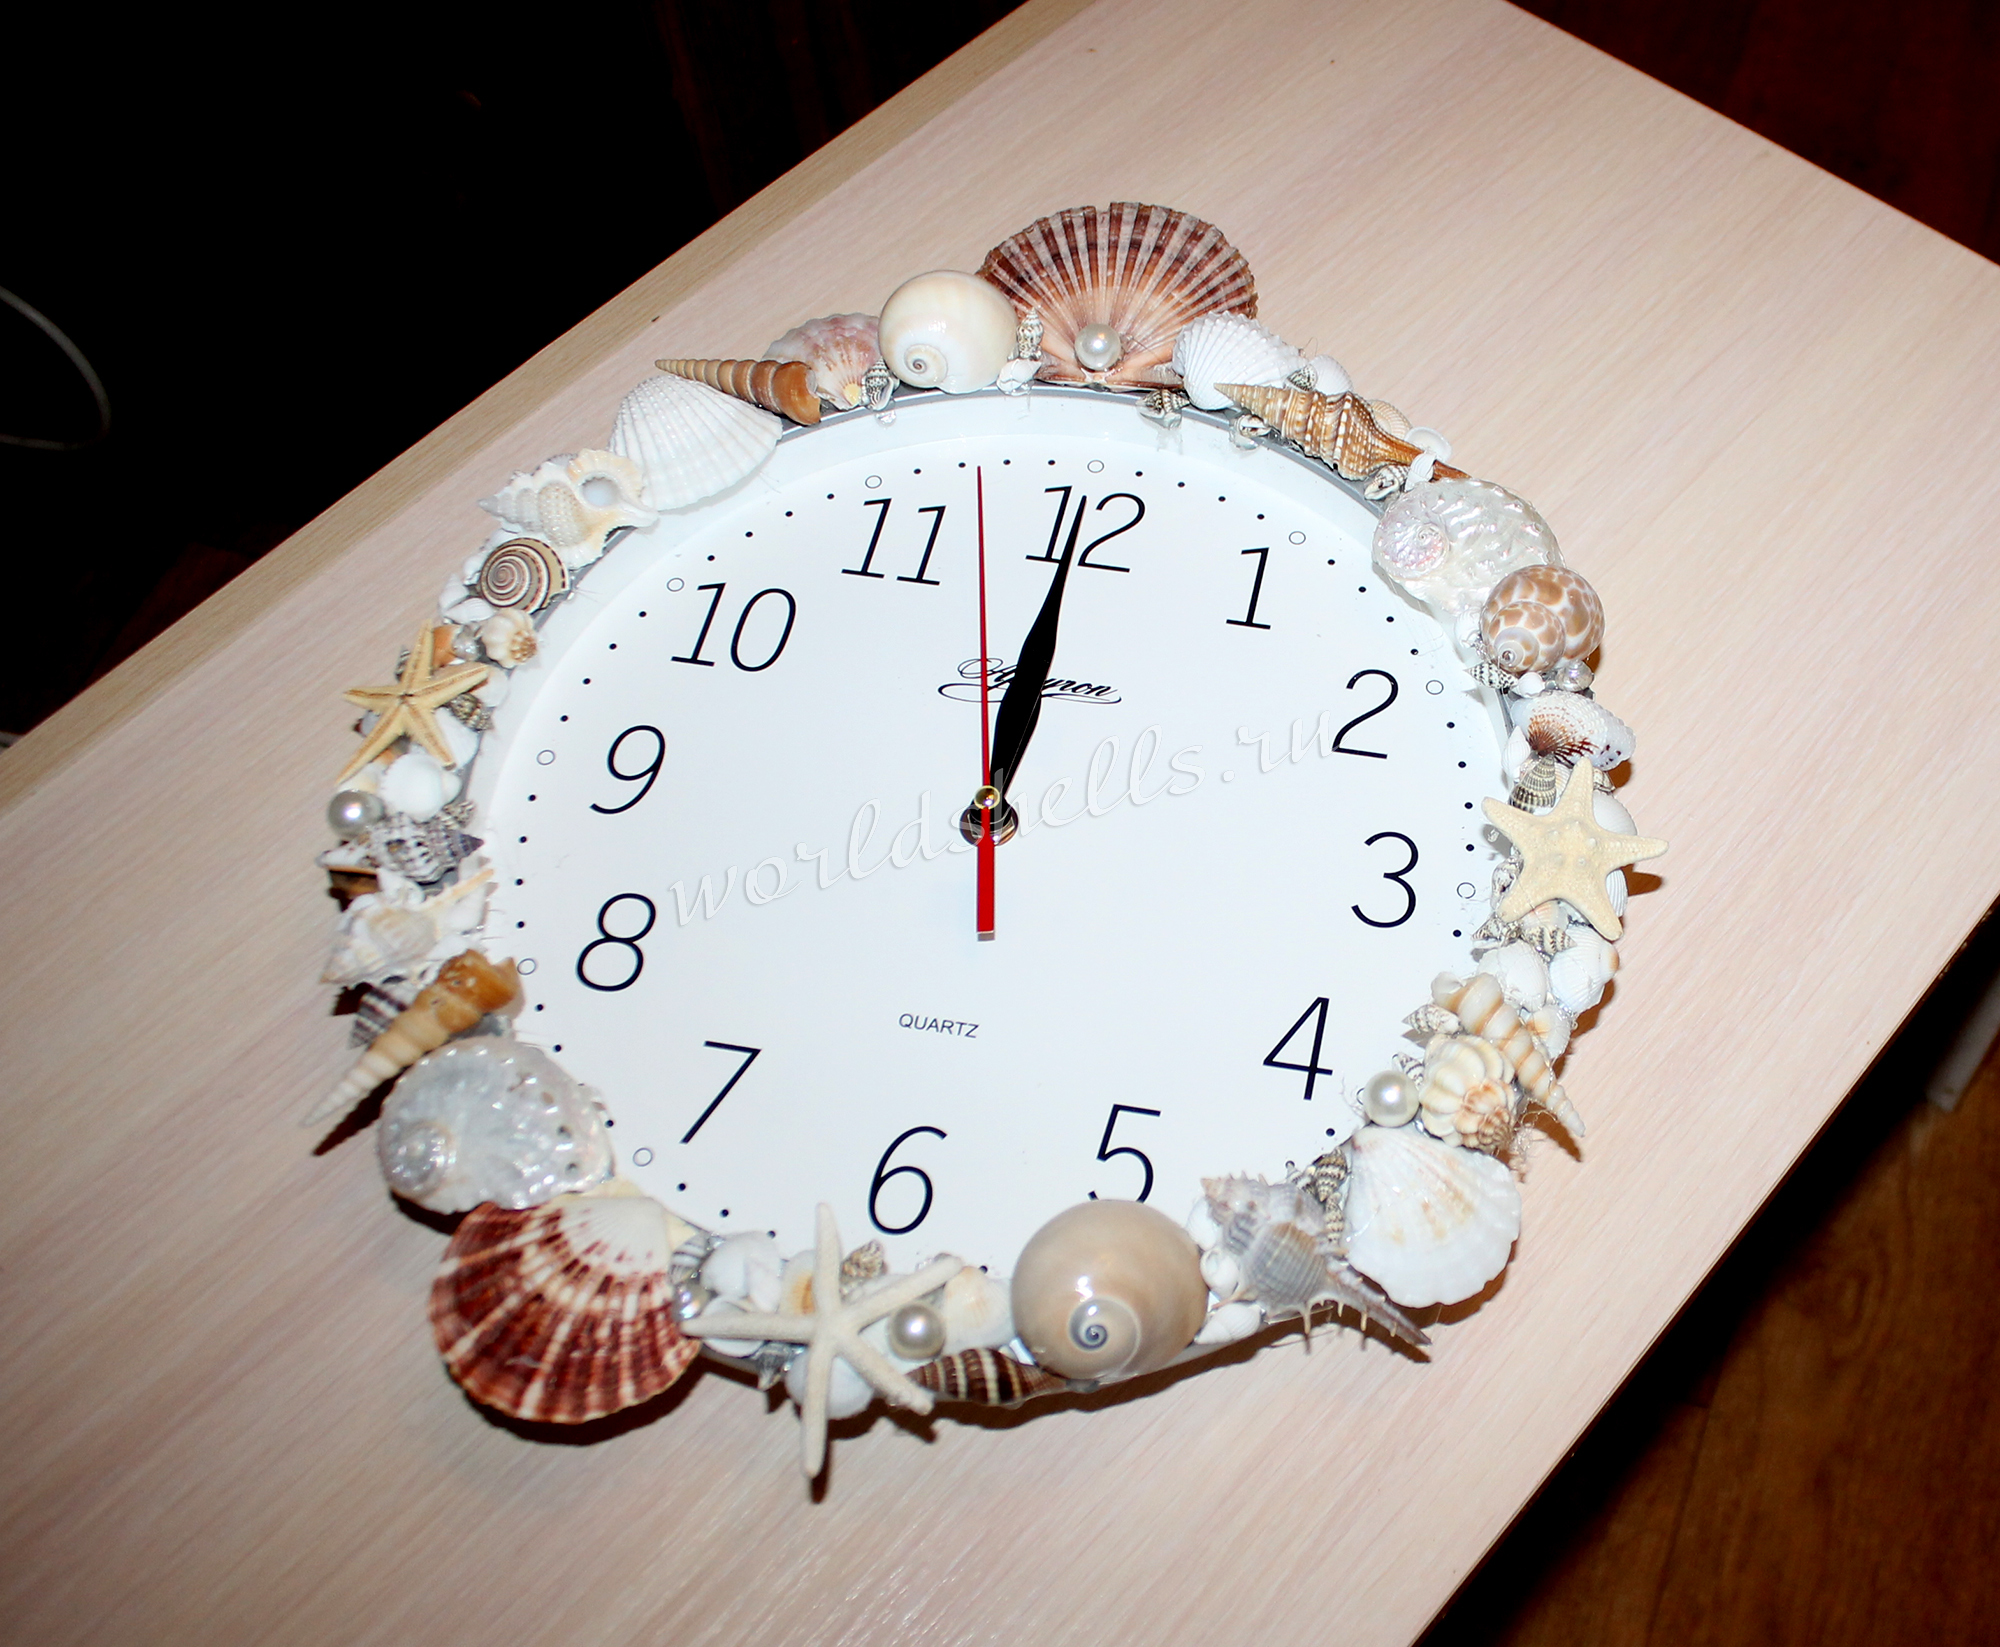 Надоело перекладывать ракушки с места на место, сделала из них часы в морском стиле.